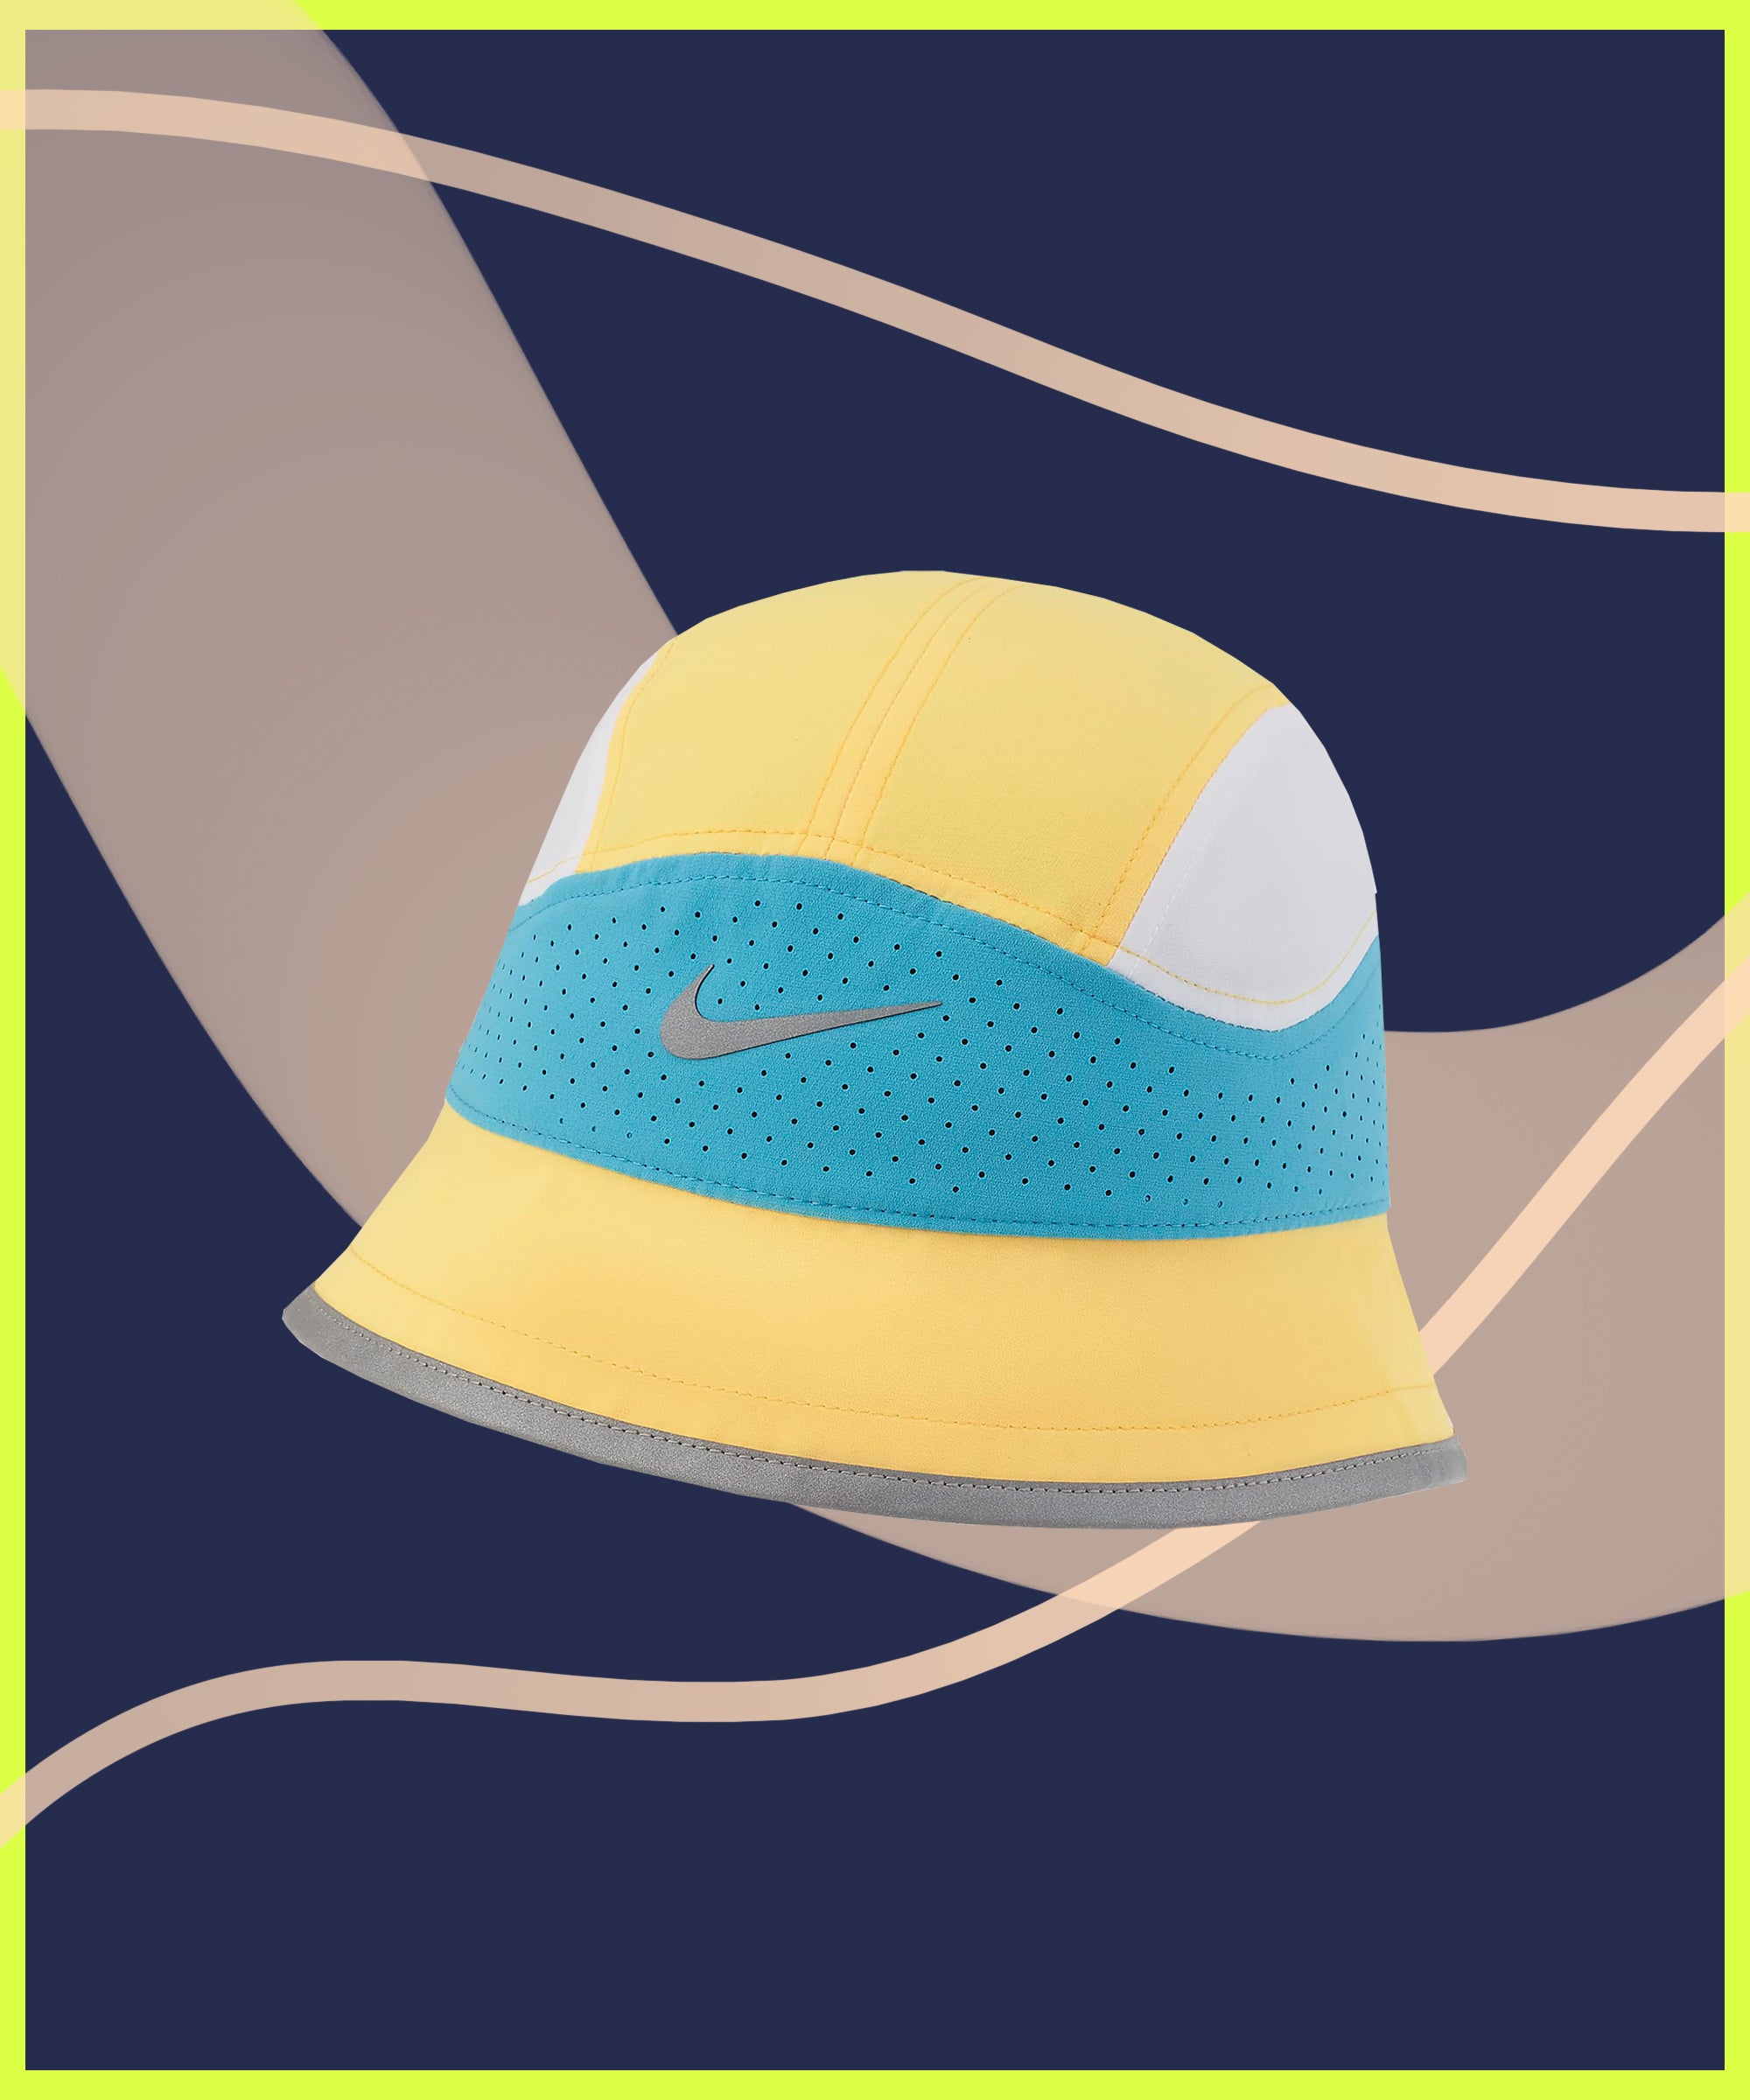 Best Bucket Hats for Men 2021